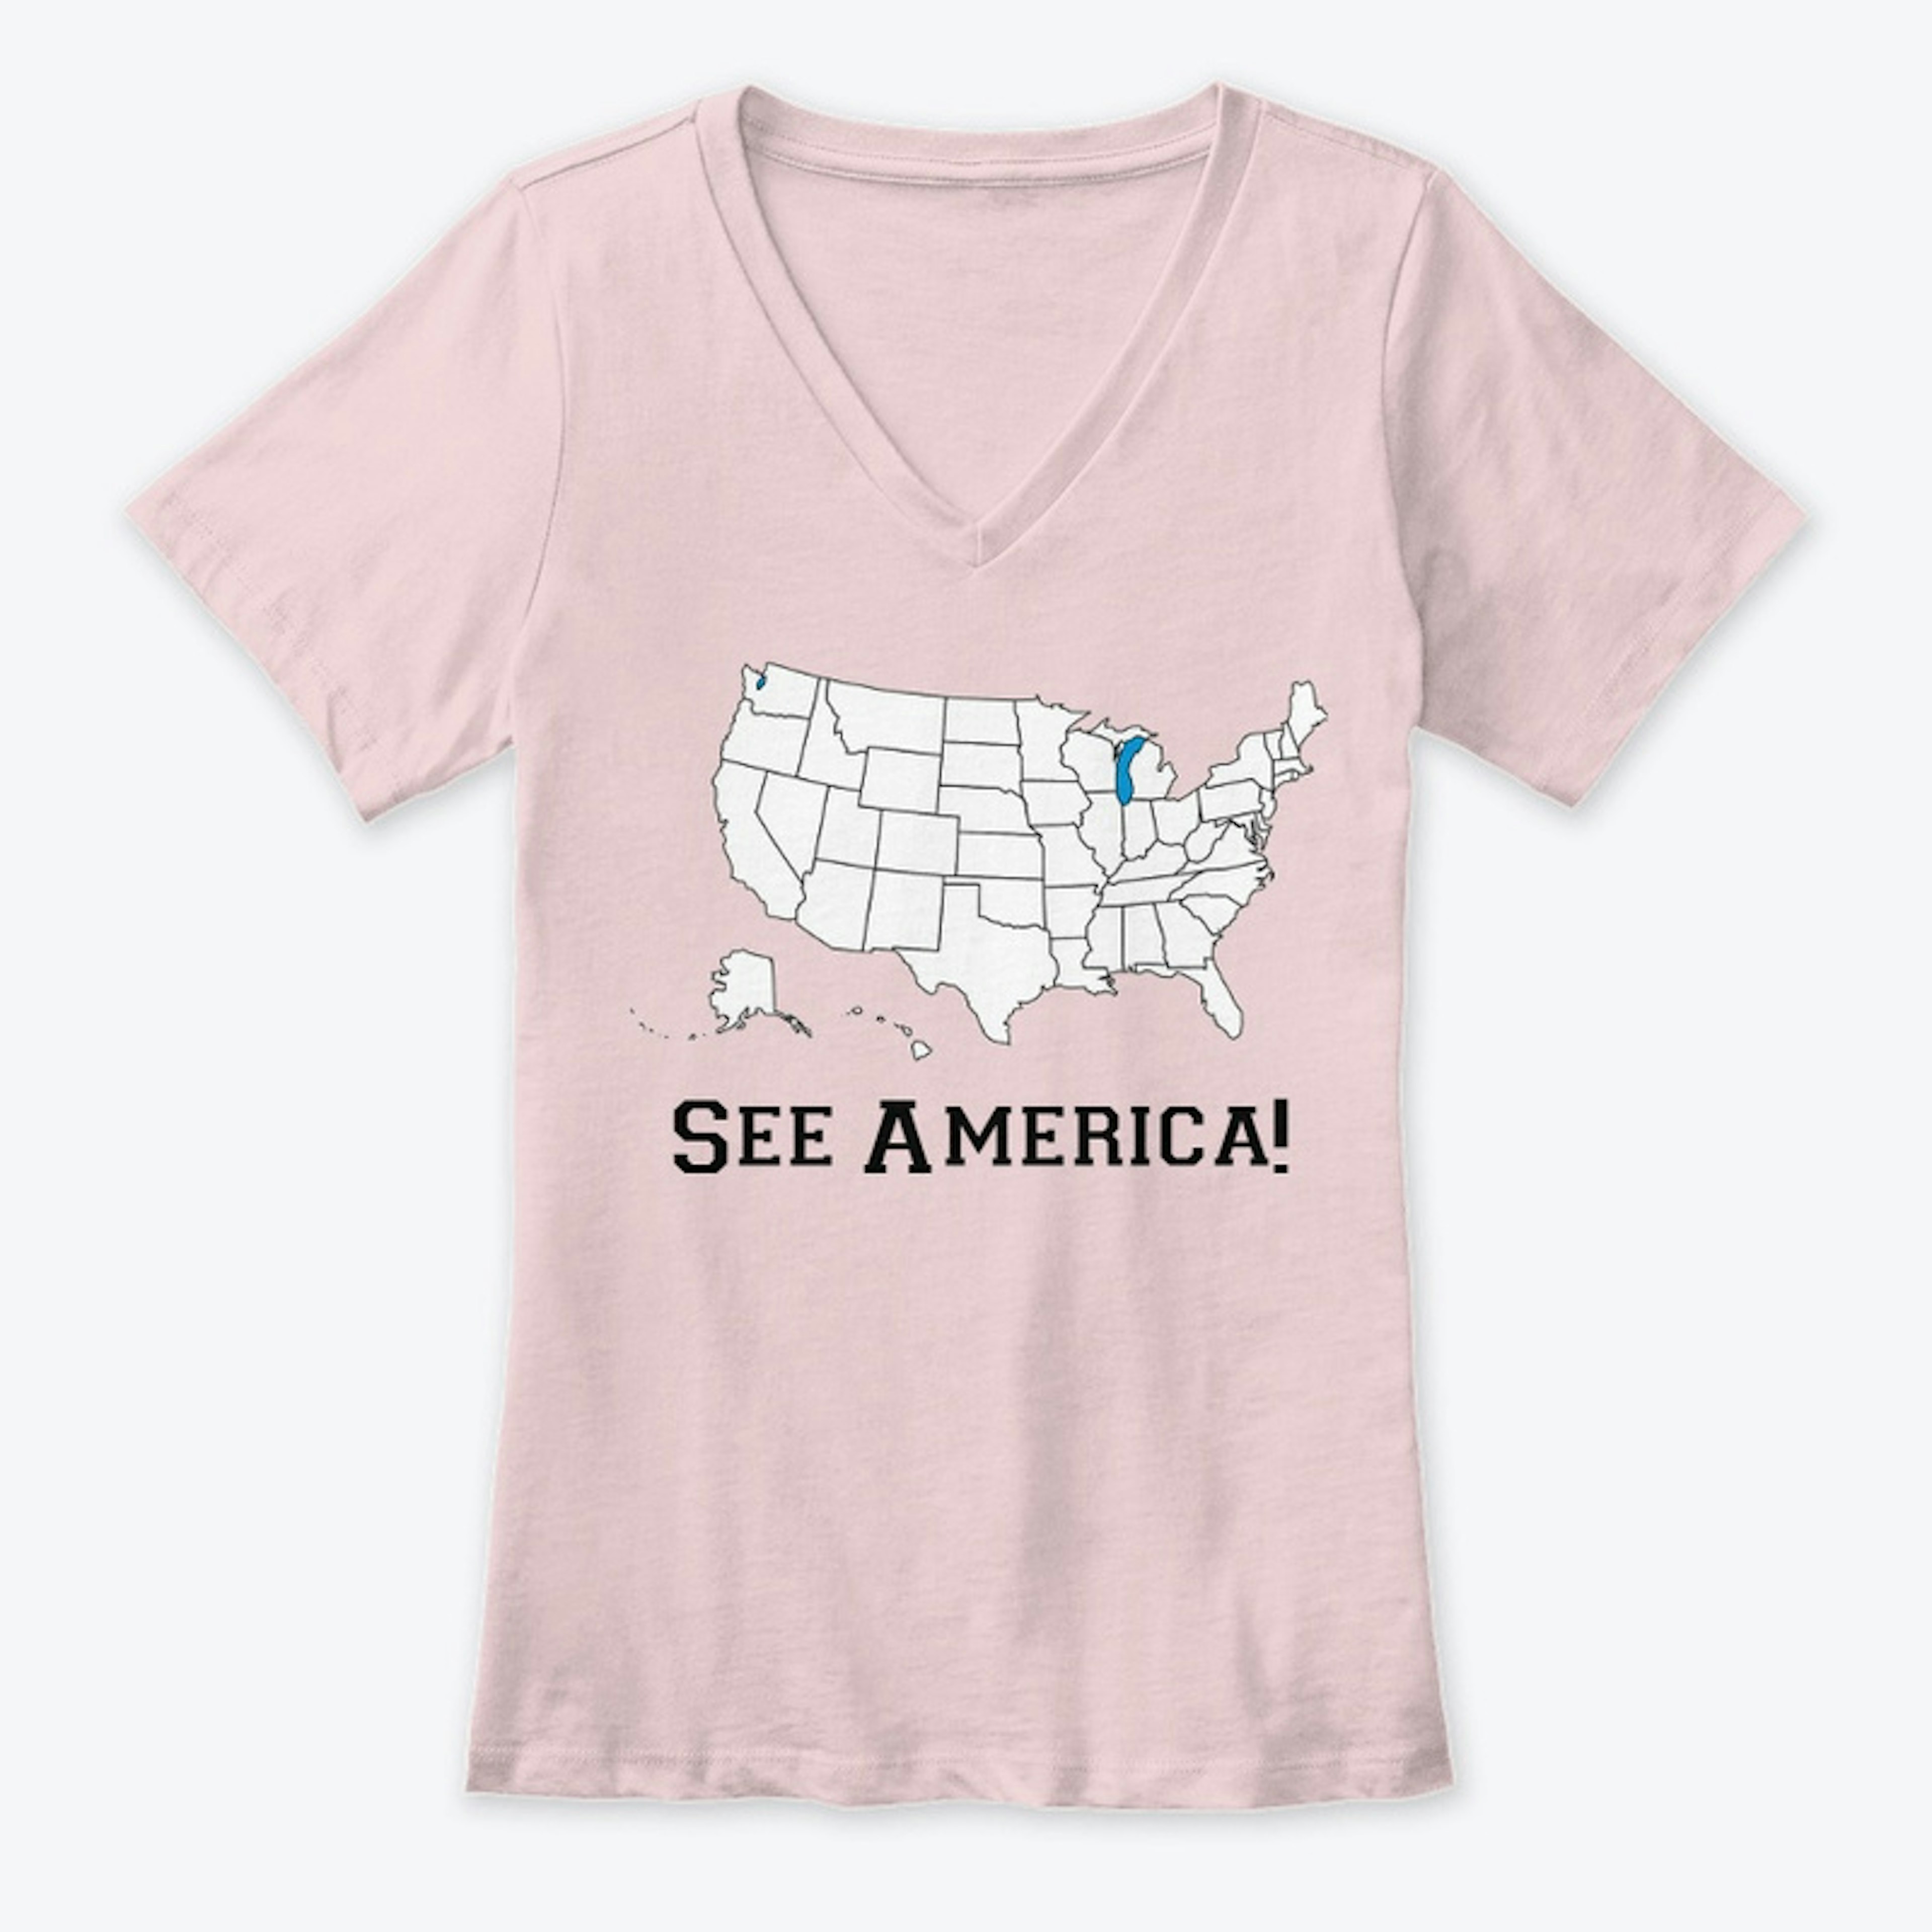 See America!